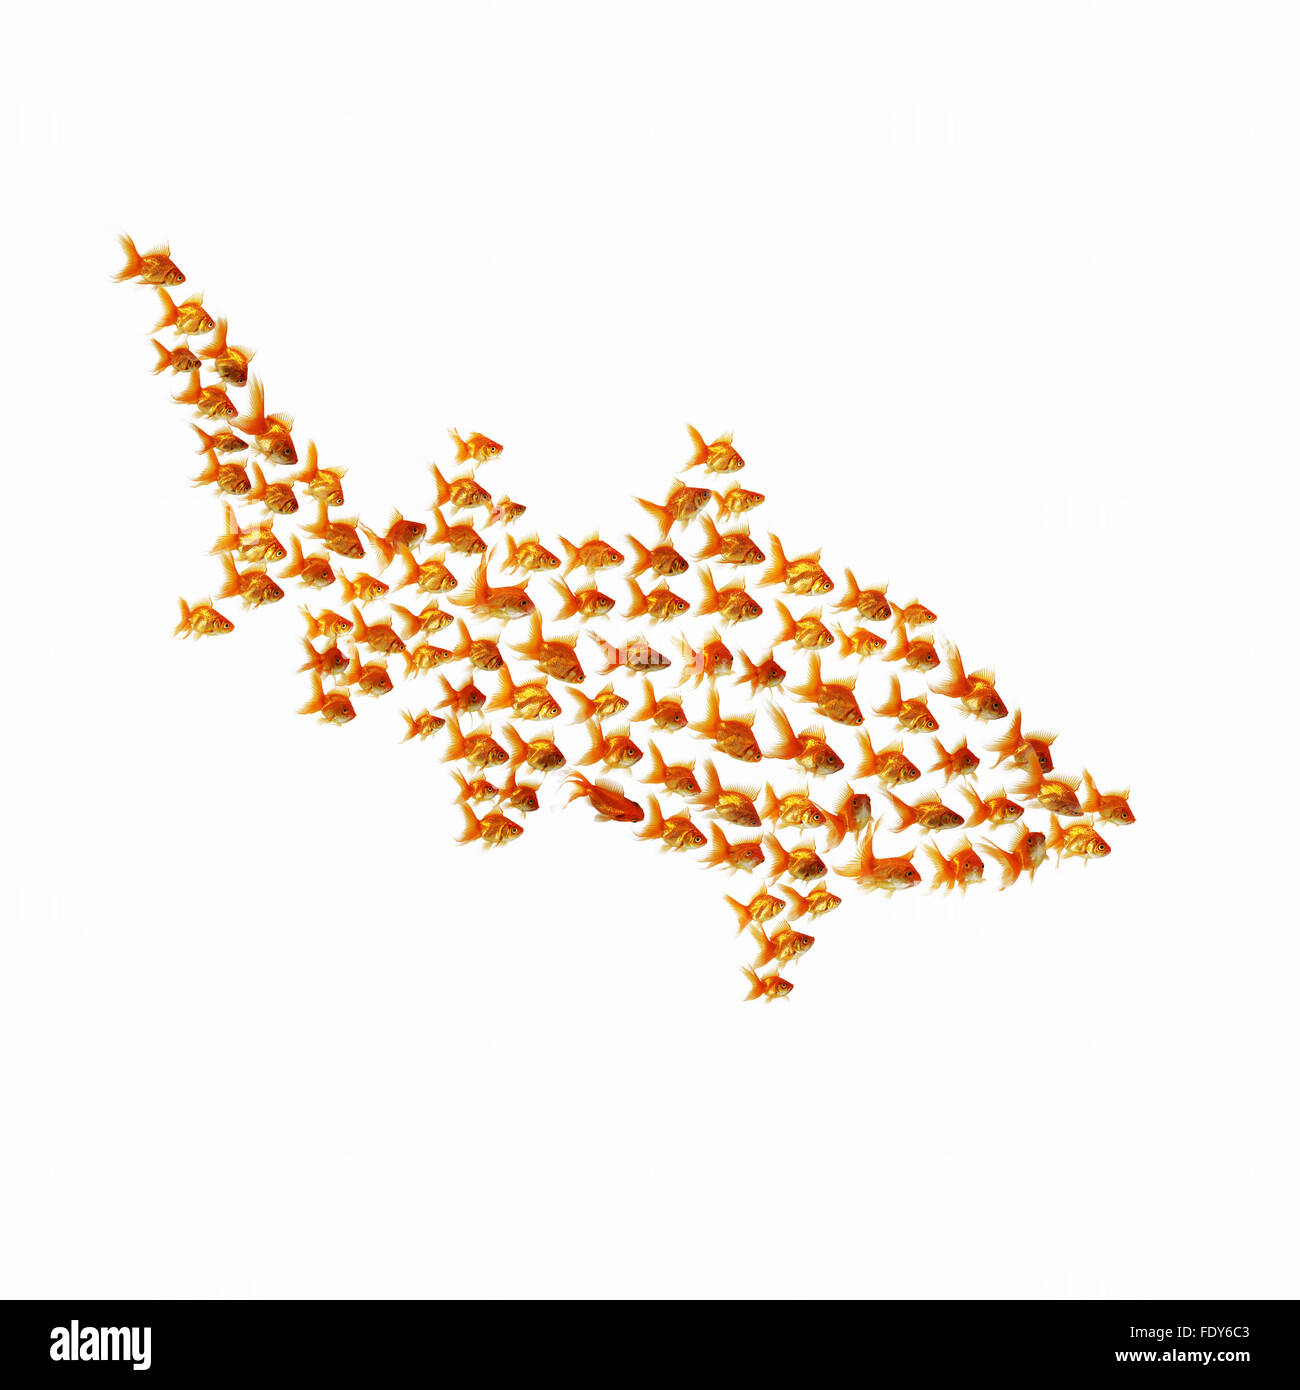 Goldfish on a white background Stock Photo